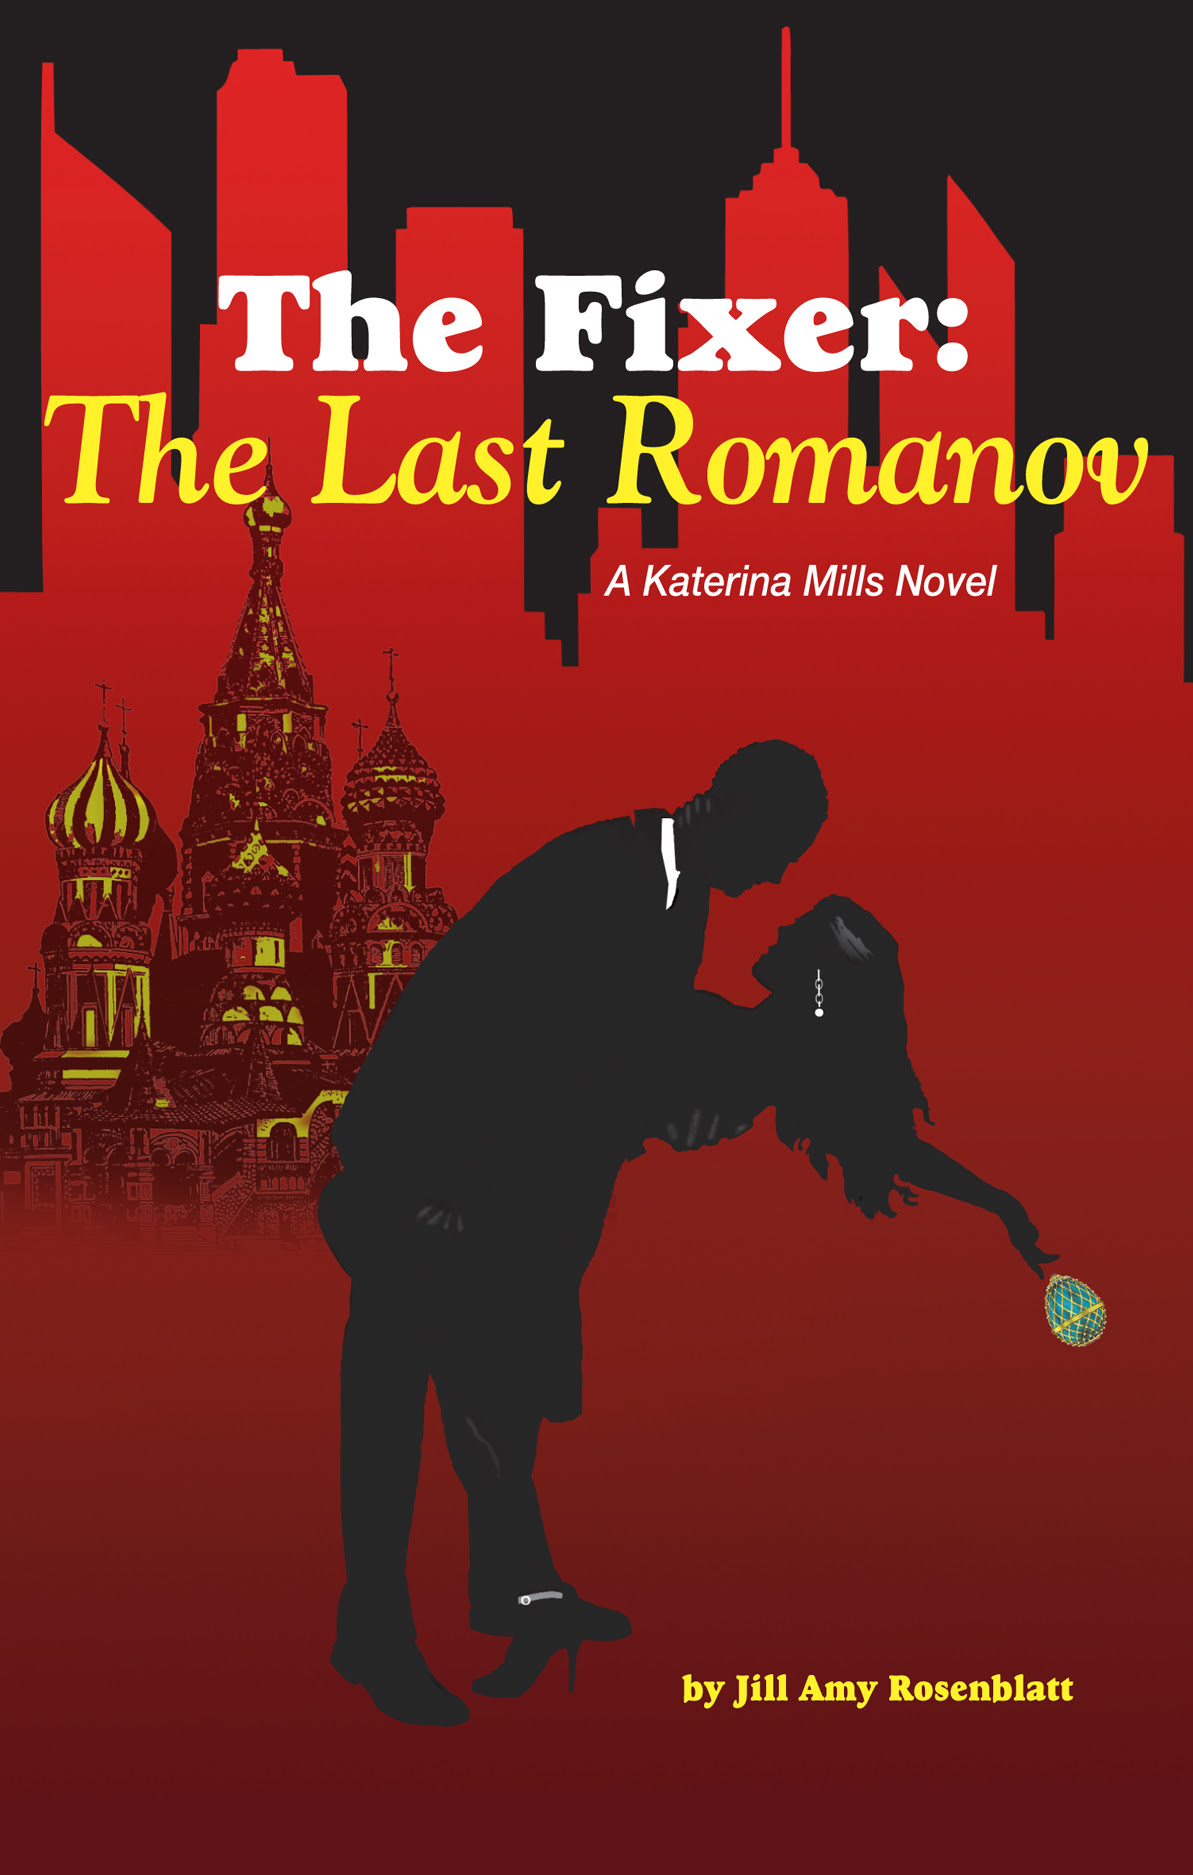 The Last Romanov by Jill Amy Rosenblatt